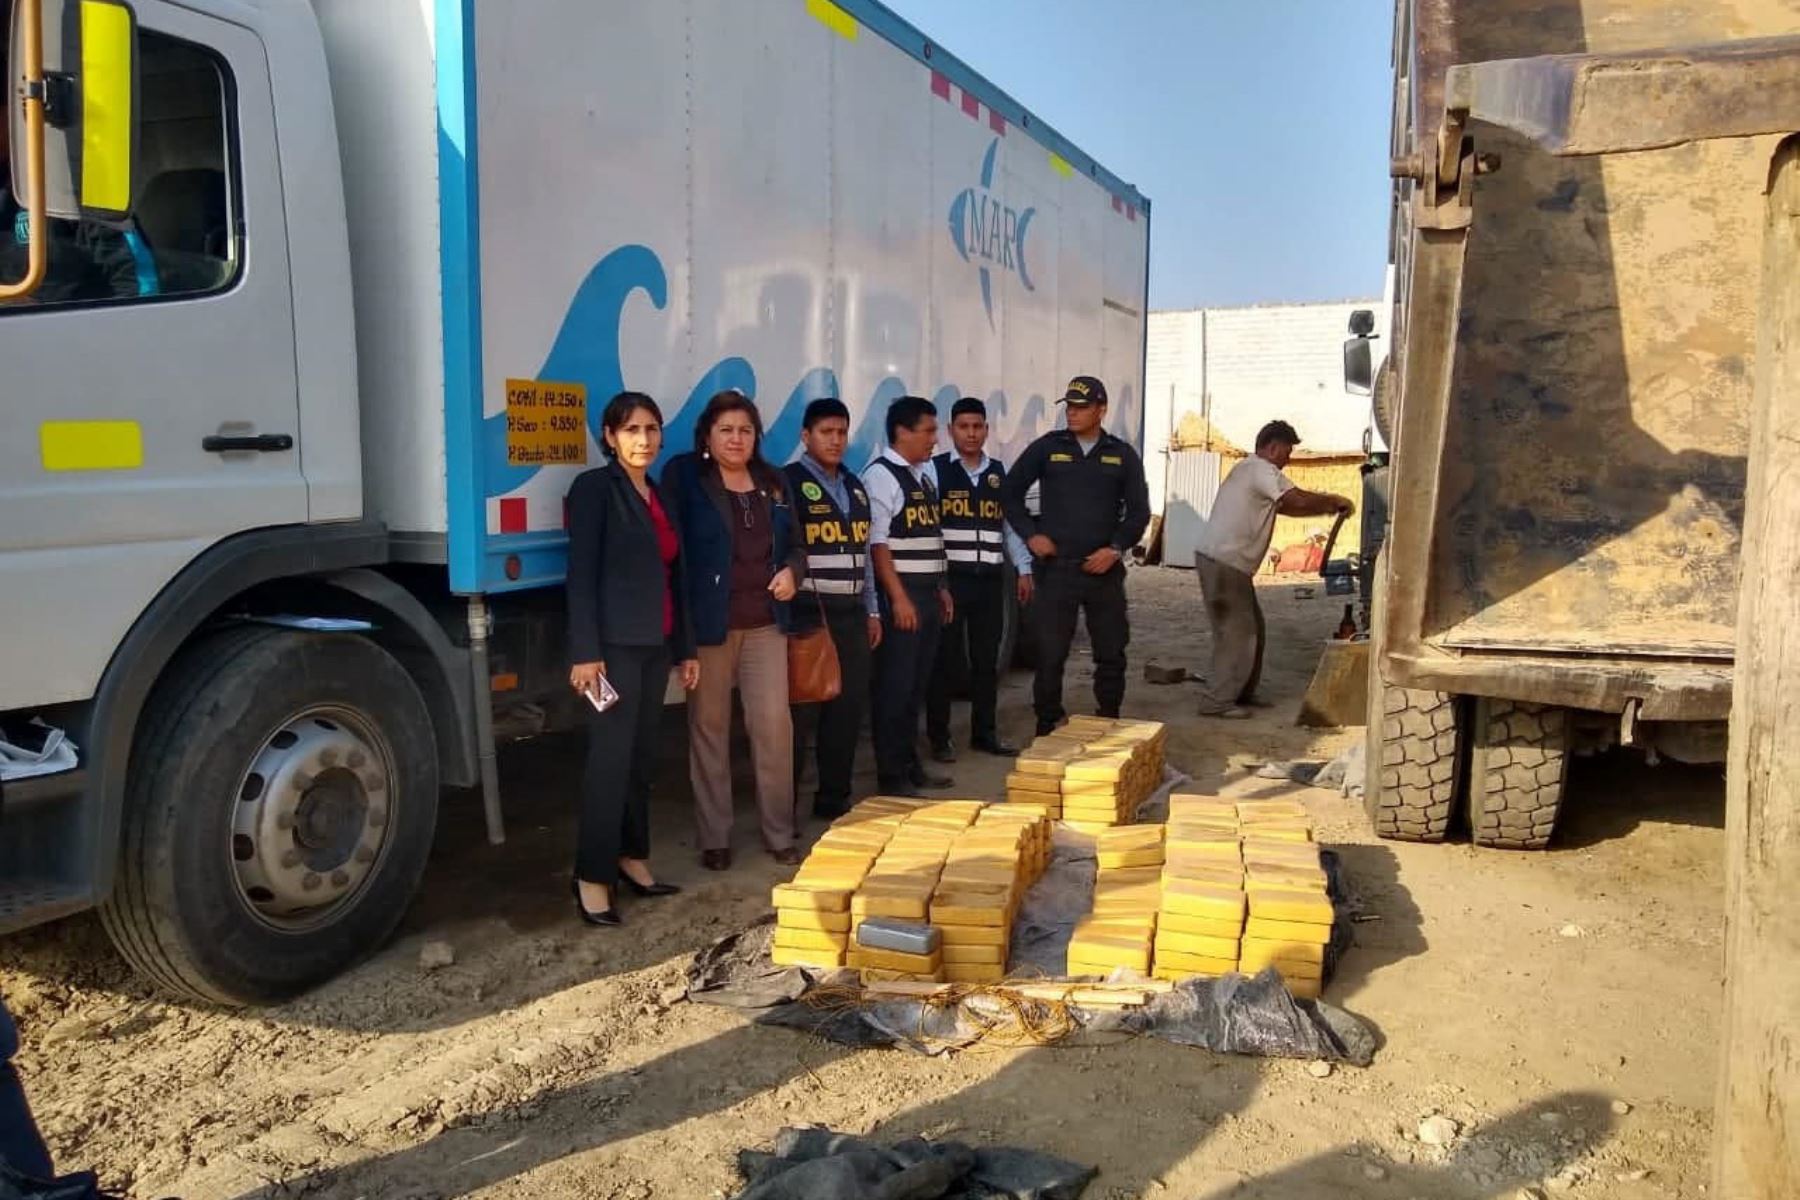 Ilegal cargamento de droga estaba oculto en volquete permanecía en la cochera “Nery”, en la provincia de Huarmey, región Áncash.